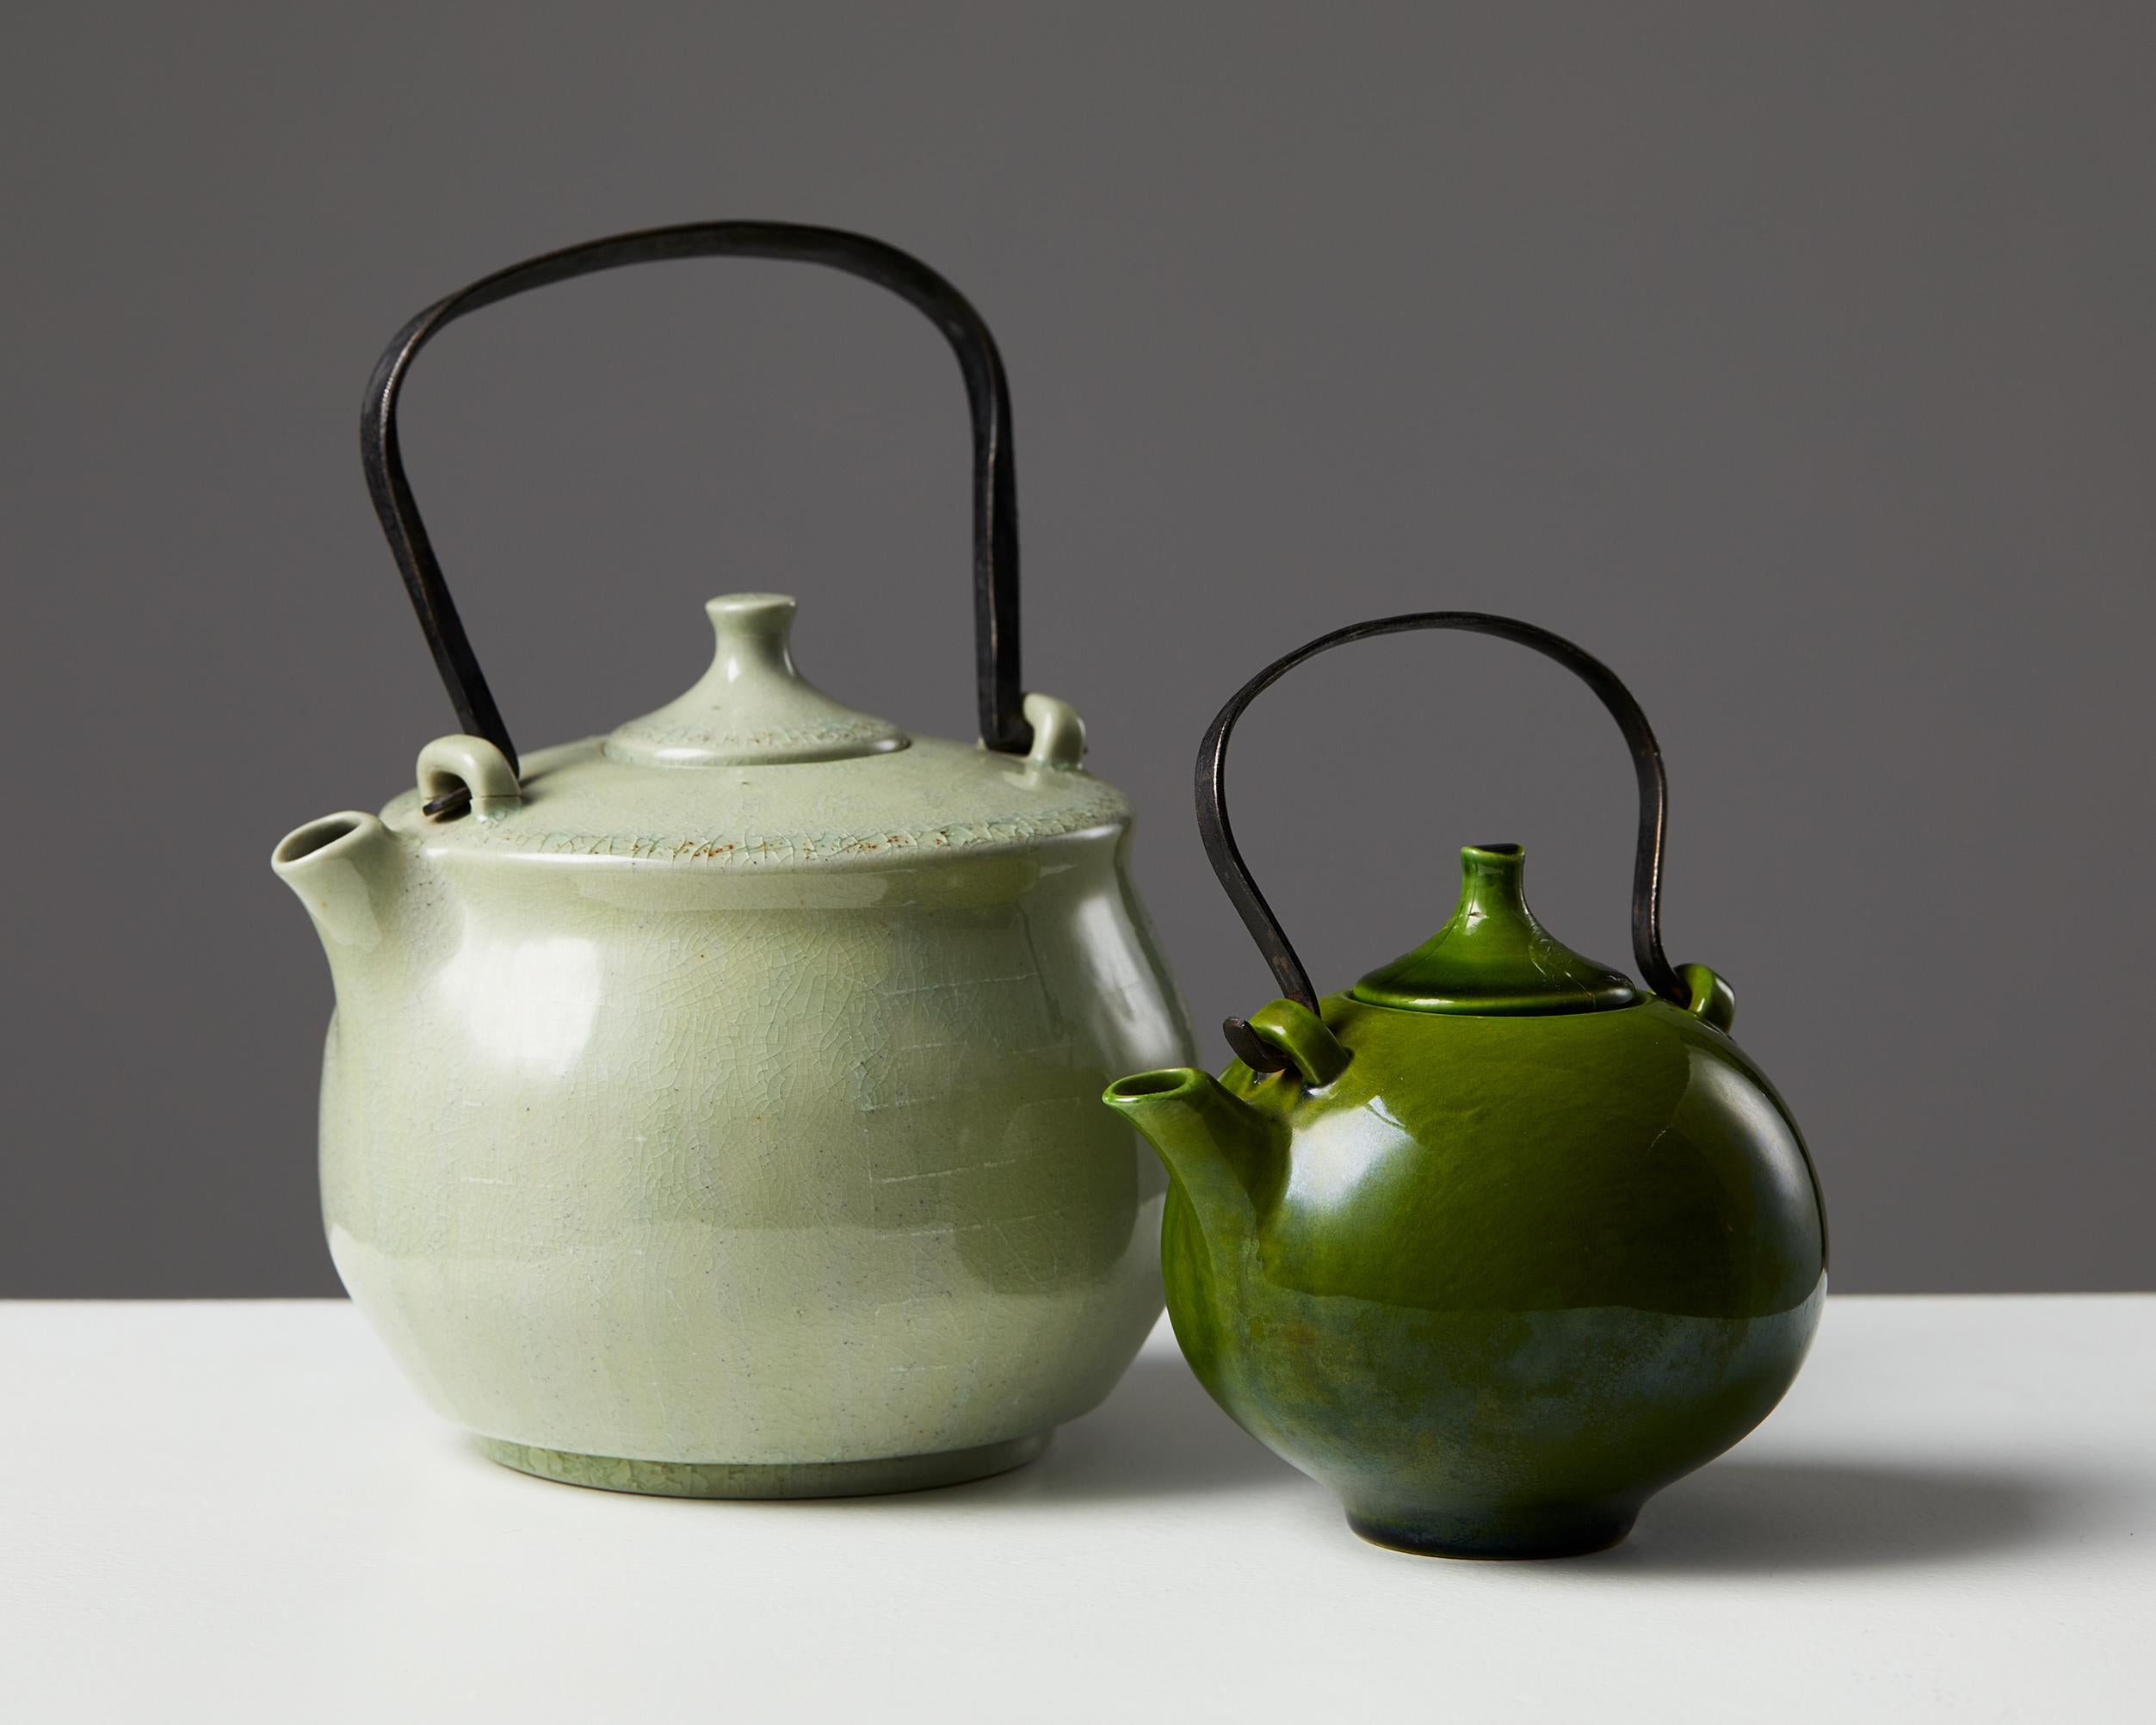 Glazed ceramic. Repairs.

Large teapot:
H: 18 cm/ 7 1/8